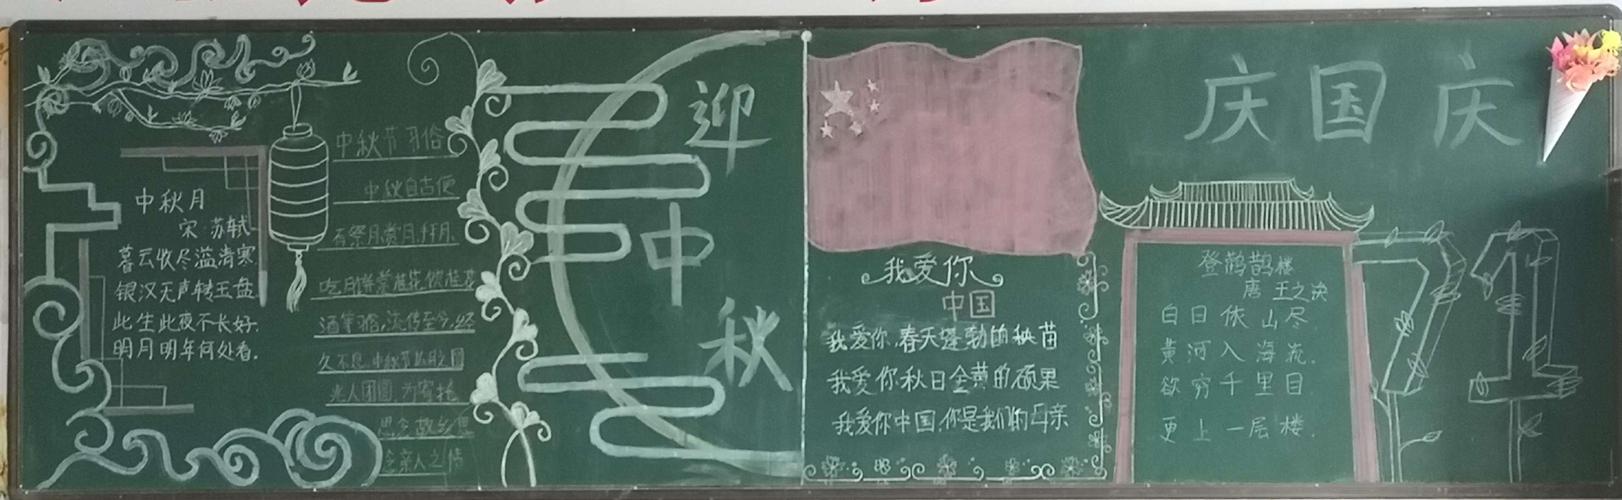 迎中秋庆国庆主题黑板报比赛副本 写美篇为让学生了解祖国的巨大